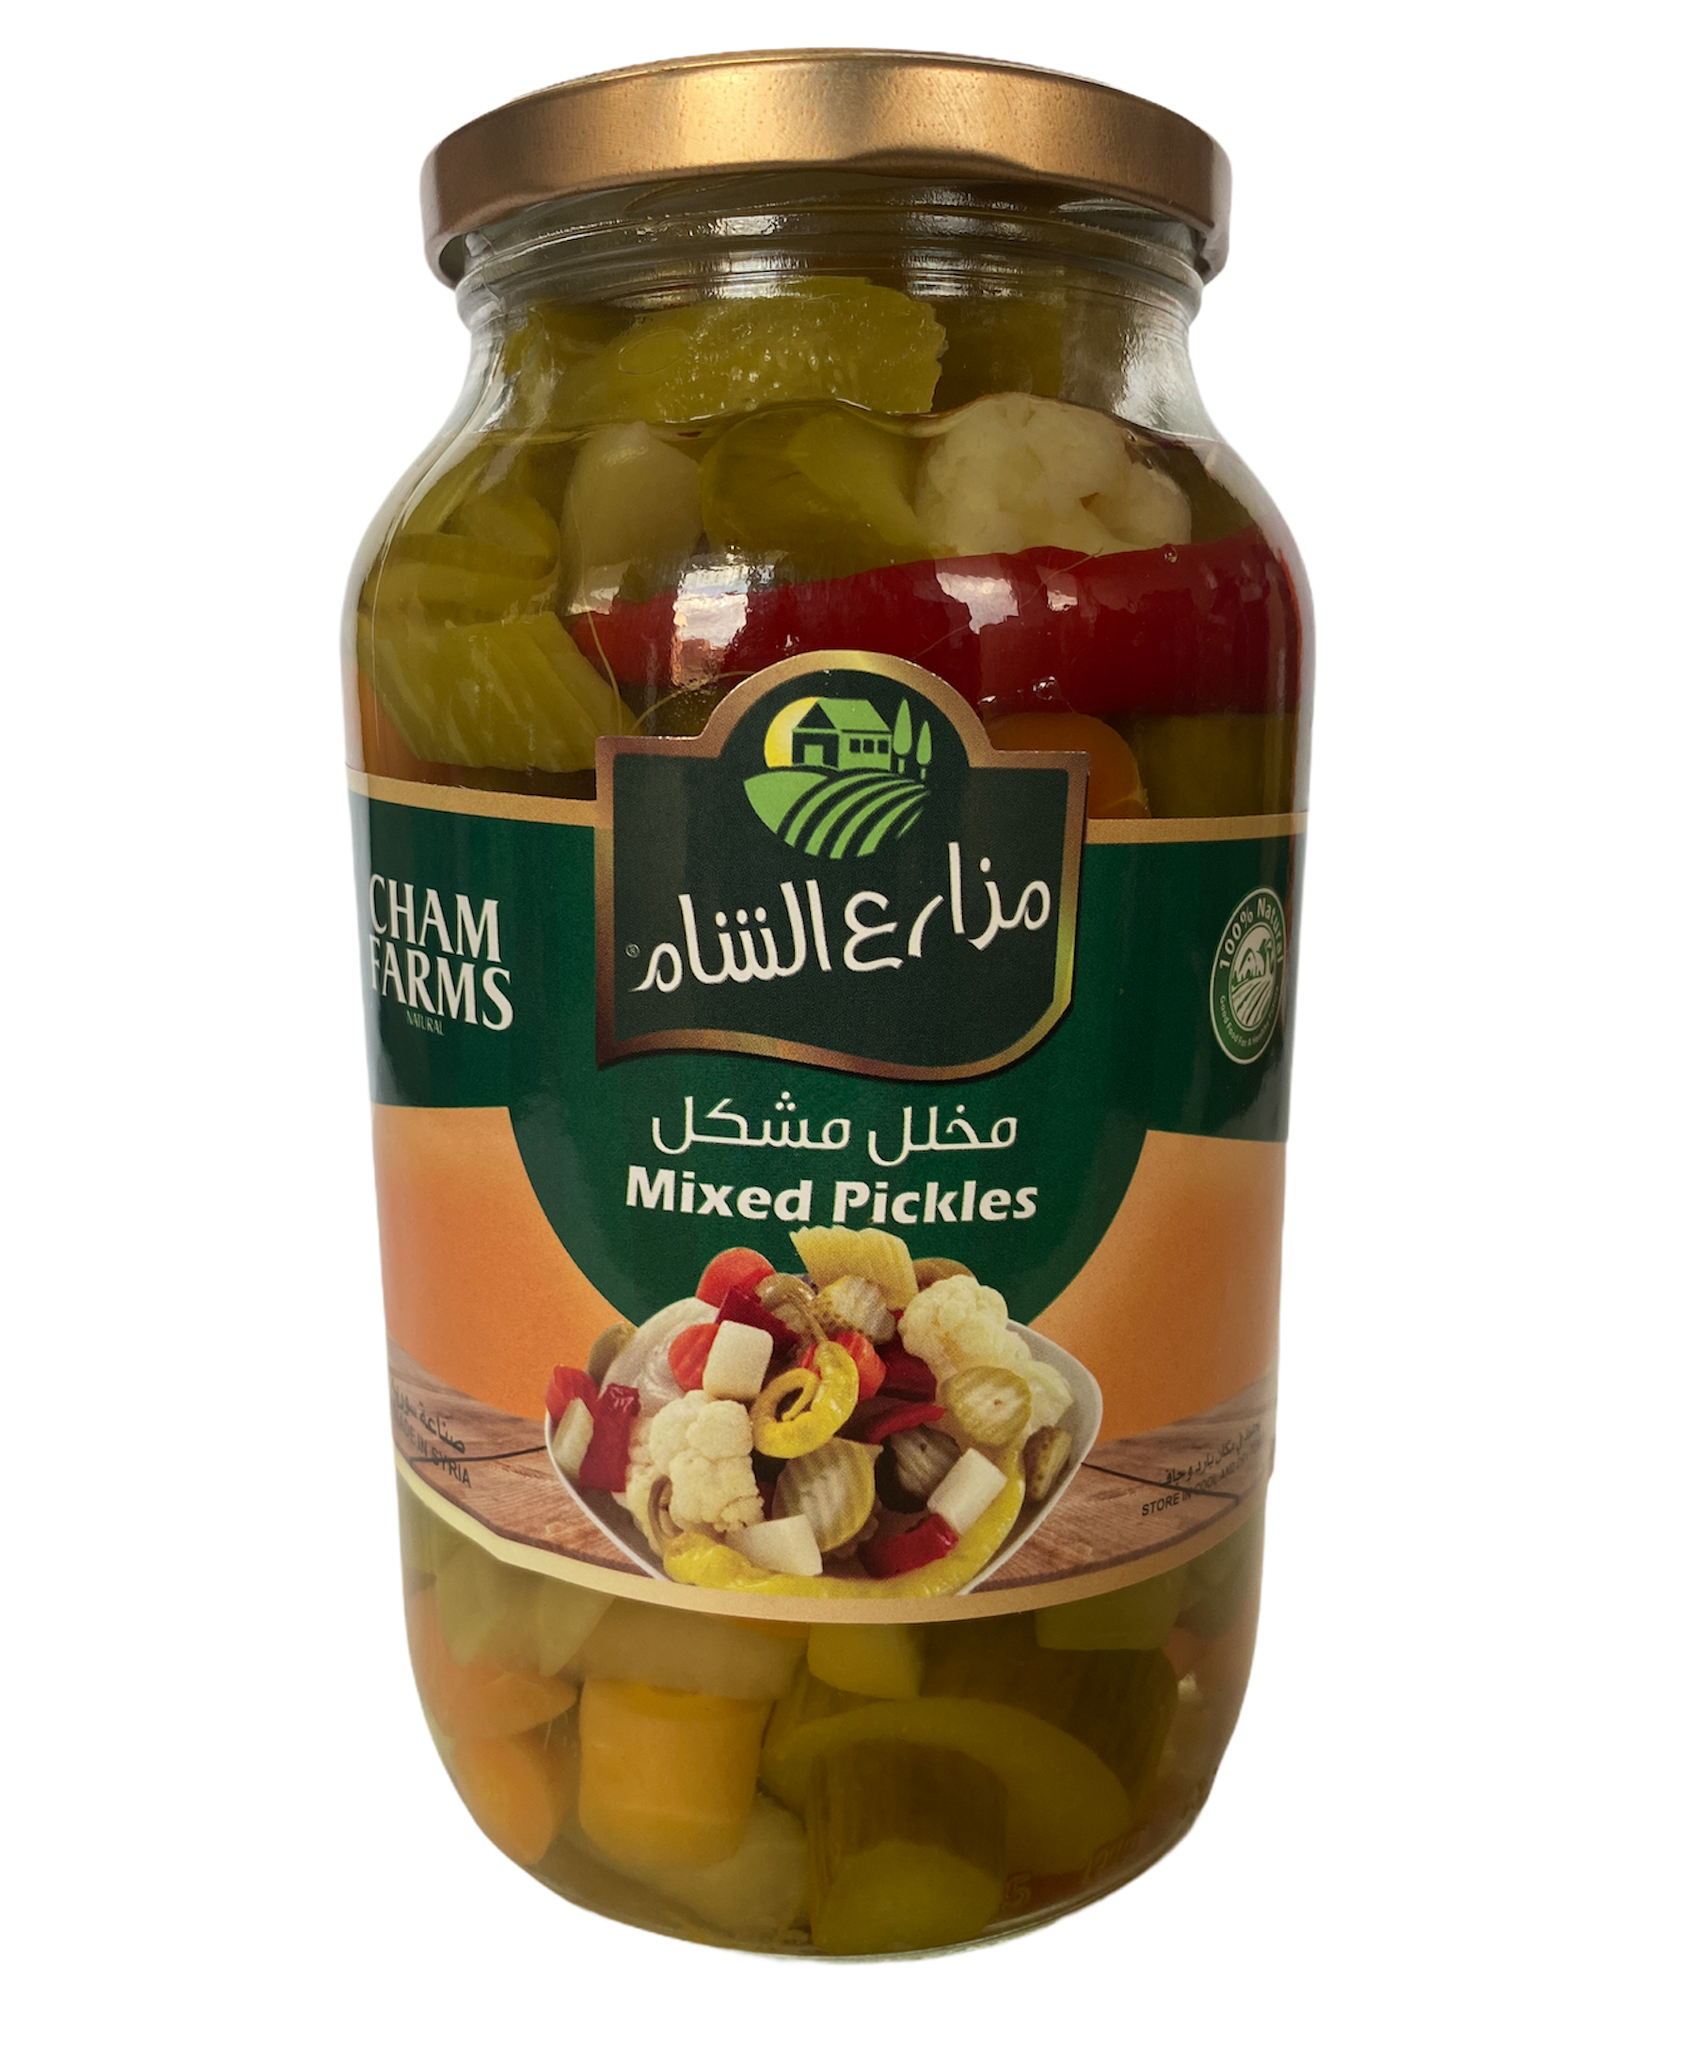 Mixed Pickles Jar